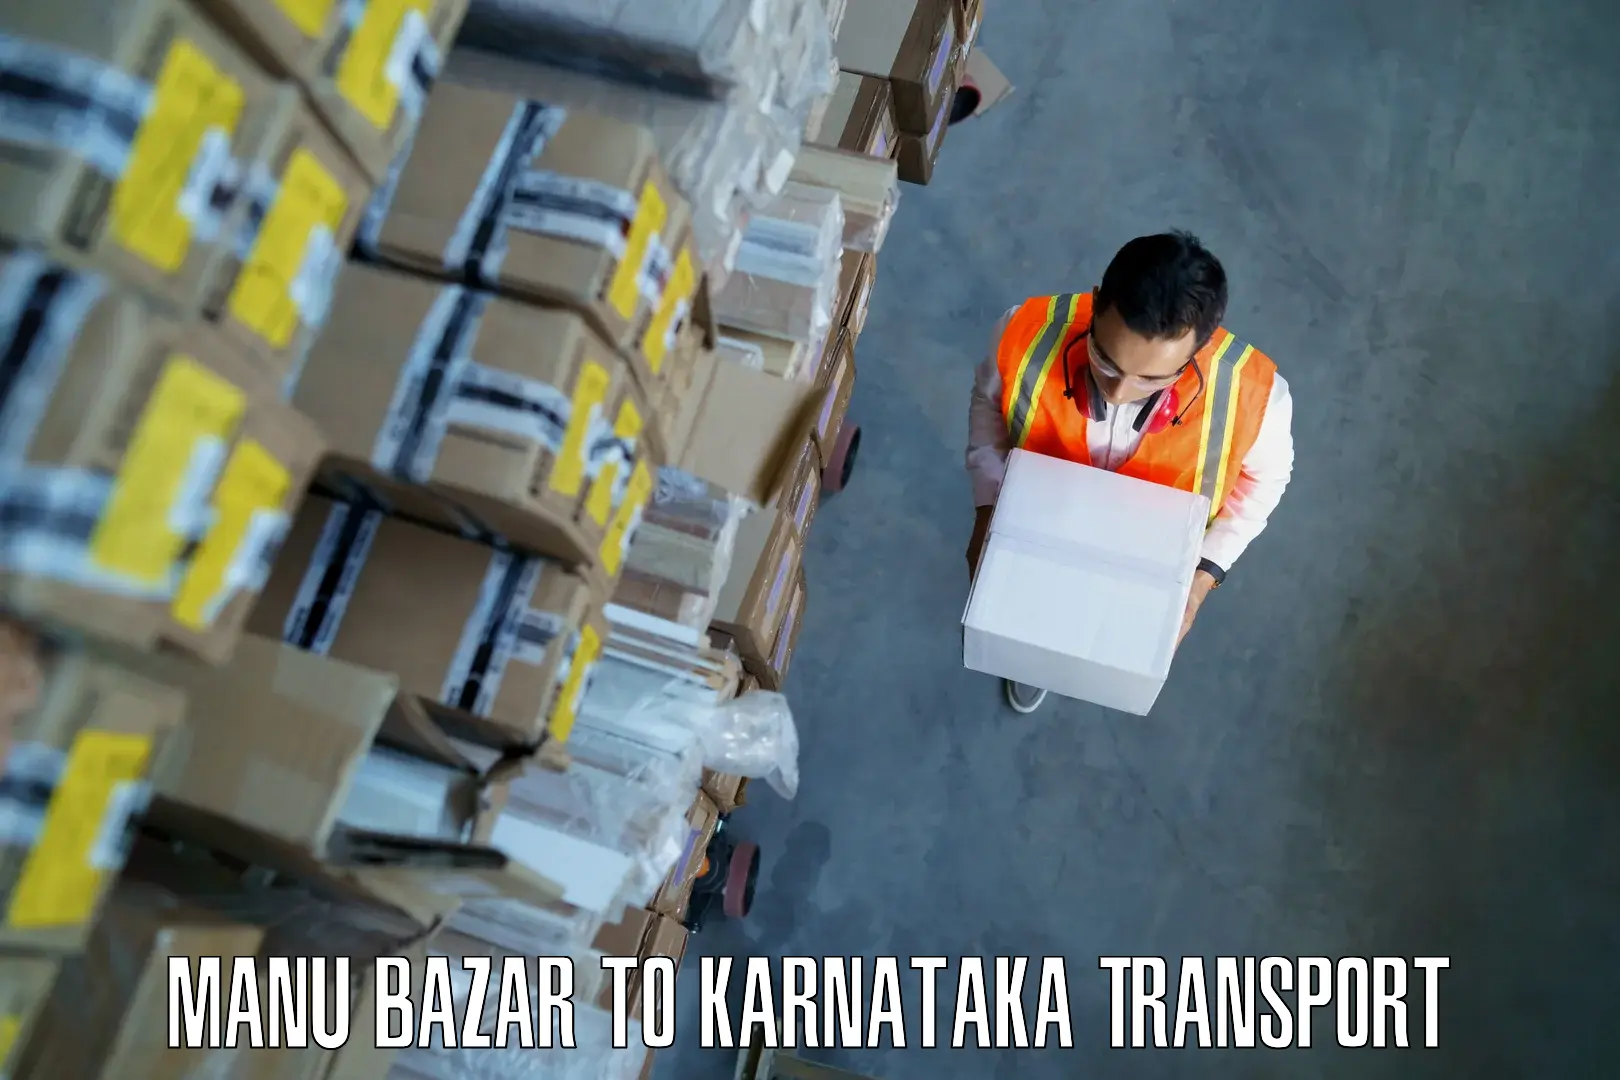 Daily parcel service transport Manu Bazar to Mundgod